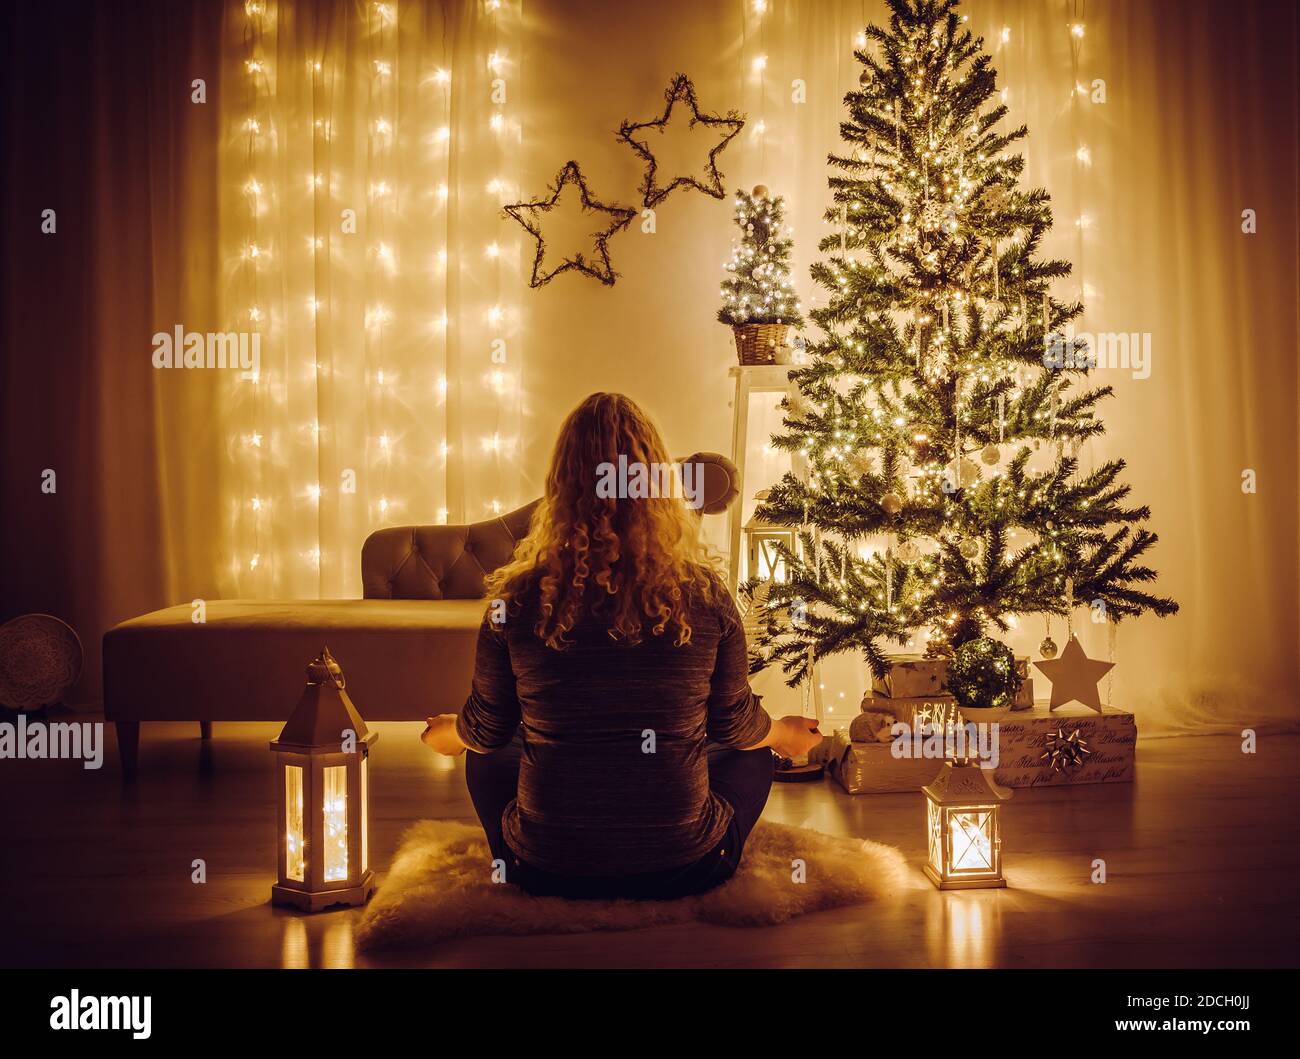 Frau sitzen auf Schaffell Teppich und meditieren. Ruhiges, entspannendes Weihnachtskonzept. Geschmückter Weihnachtsbaum mit Eiszapfen und Schneeflocken-Ornamenten. Stockfoto